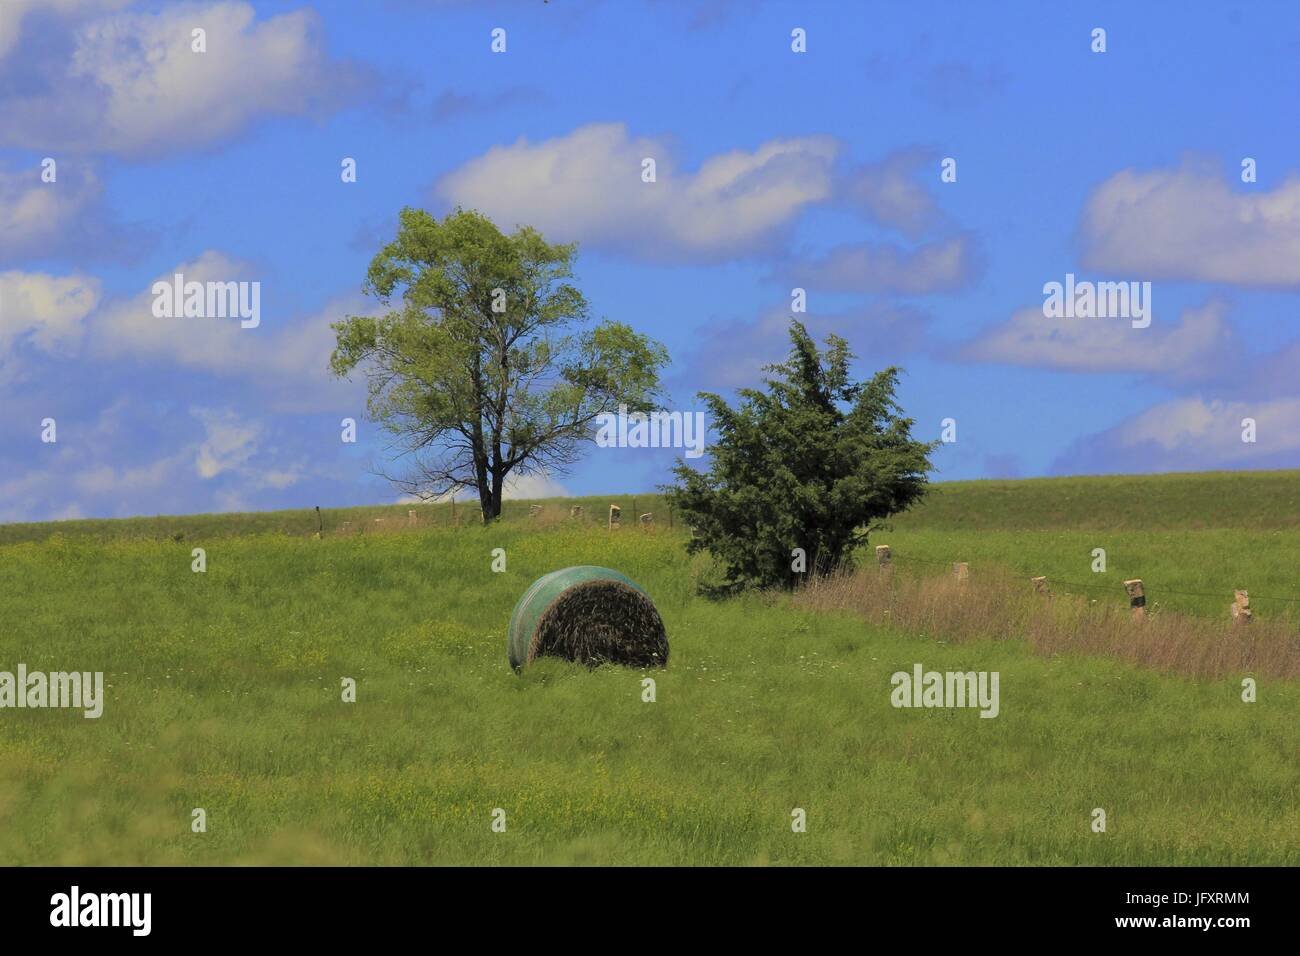 Kansas Pays Paysage avec une balle de foin, des arbres,l'herbe, et le ciel bleu avec des nuages. Banque D'Images